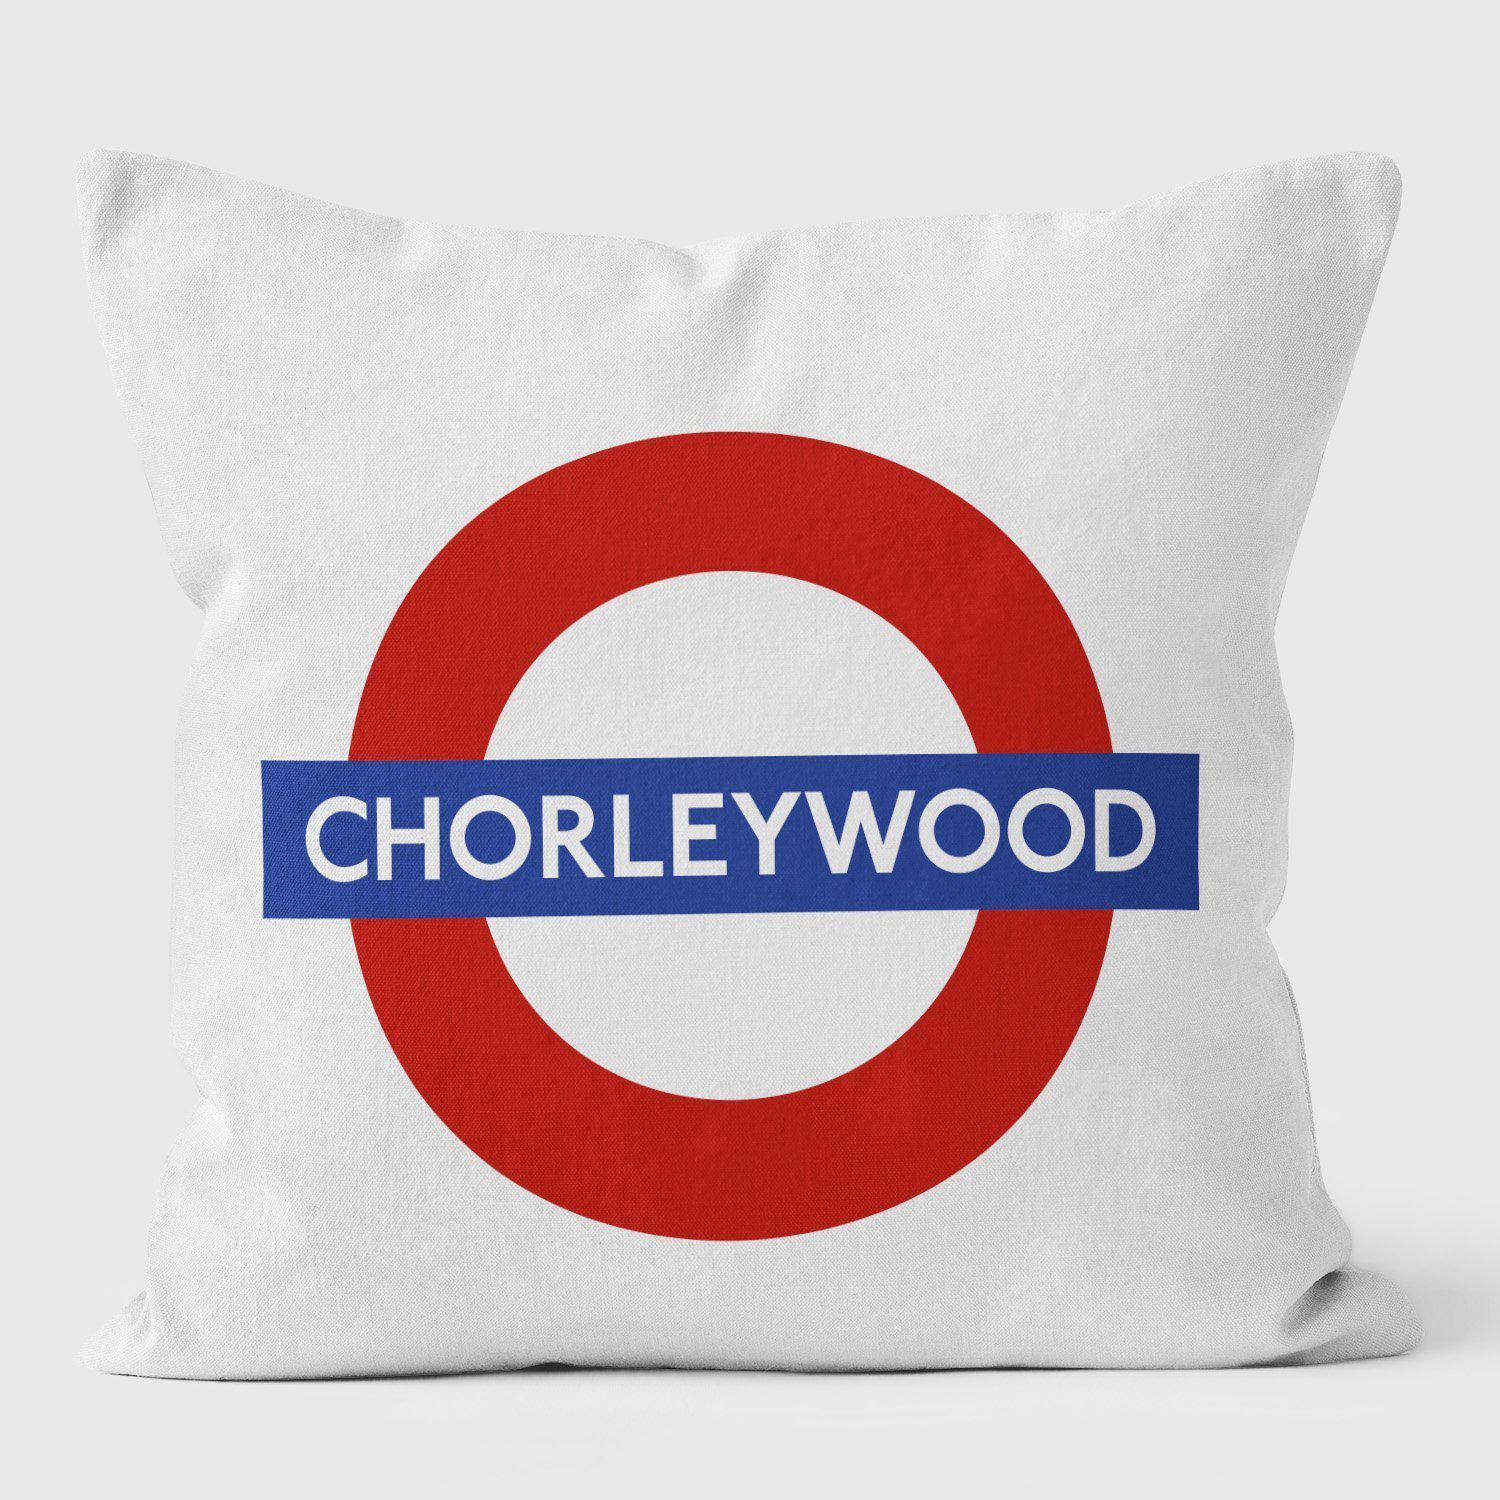 Chorleywood London Underground Tube Station Roundel Cushion - Handmade Cushions UK - WeLoveCushions